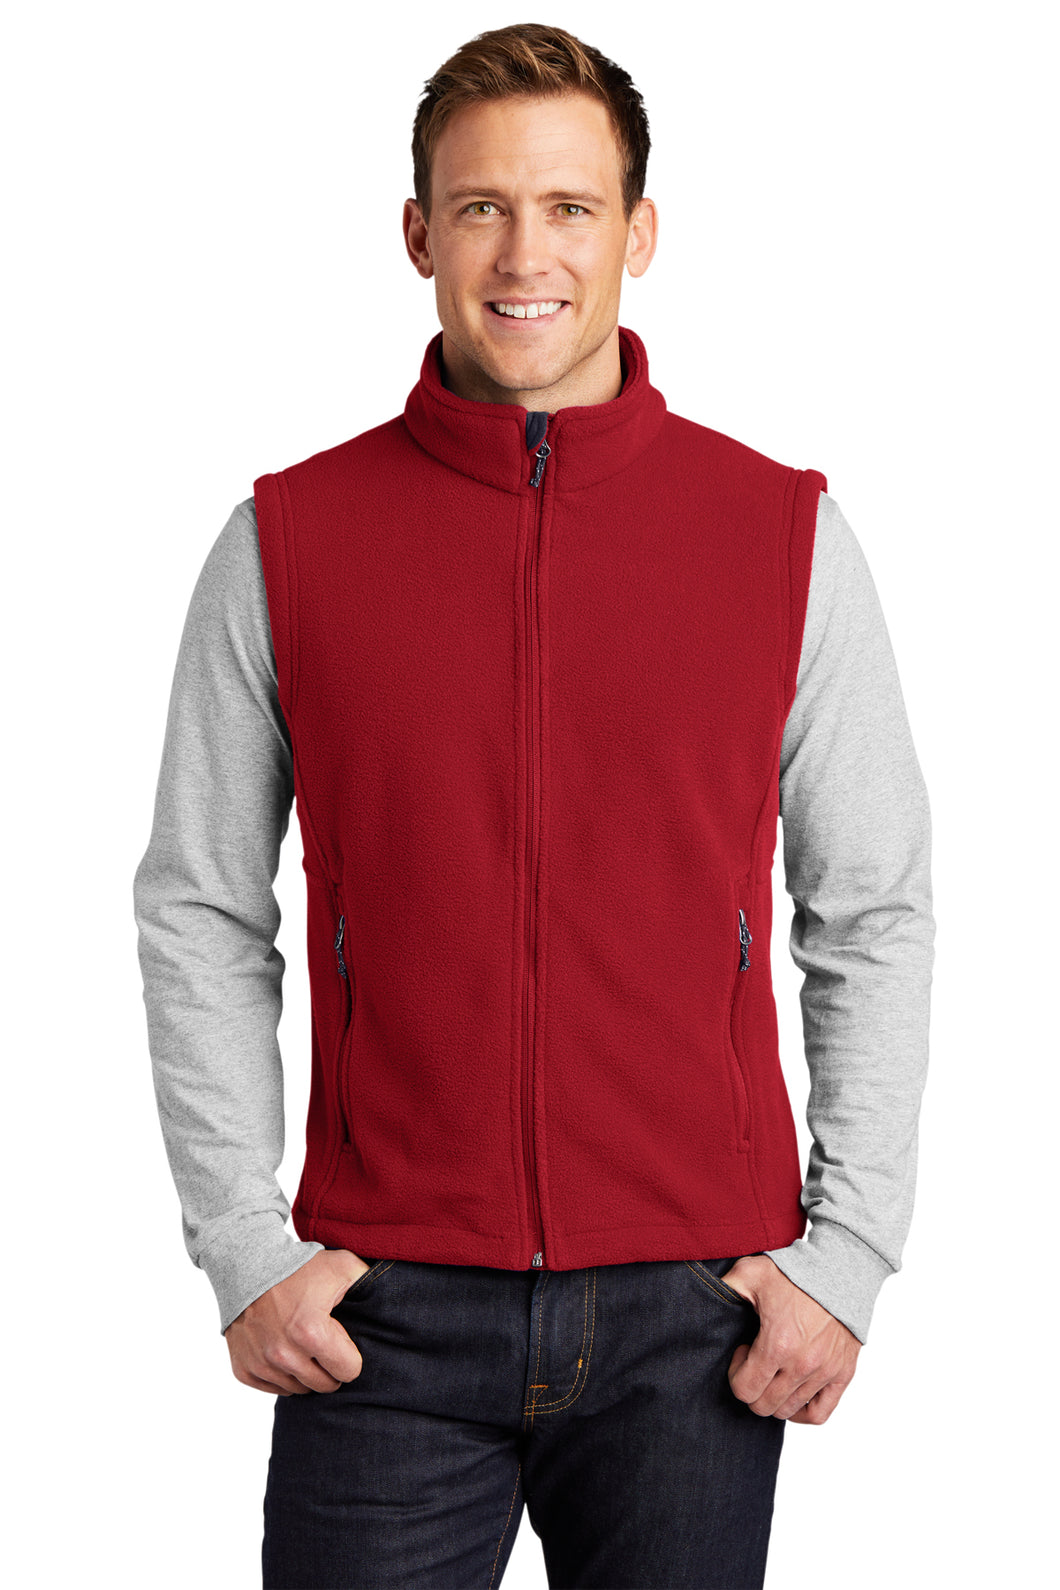 Port Authority 9oz Fleece Vest (men's and women's)